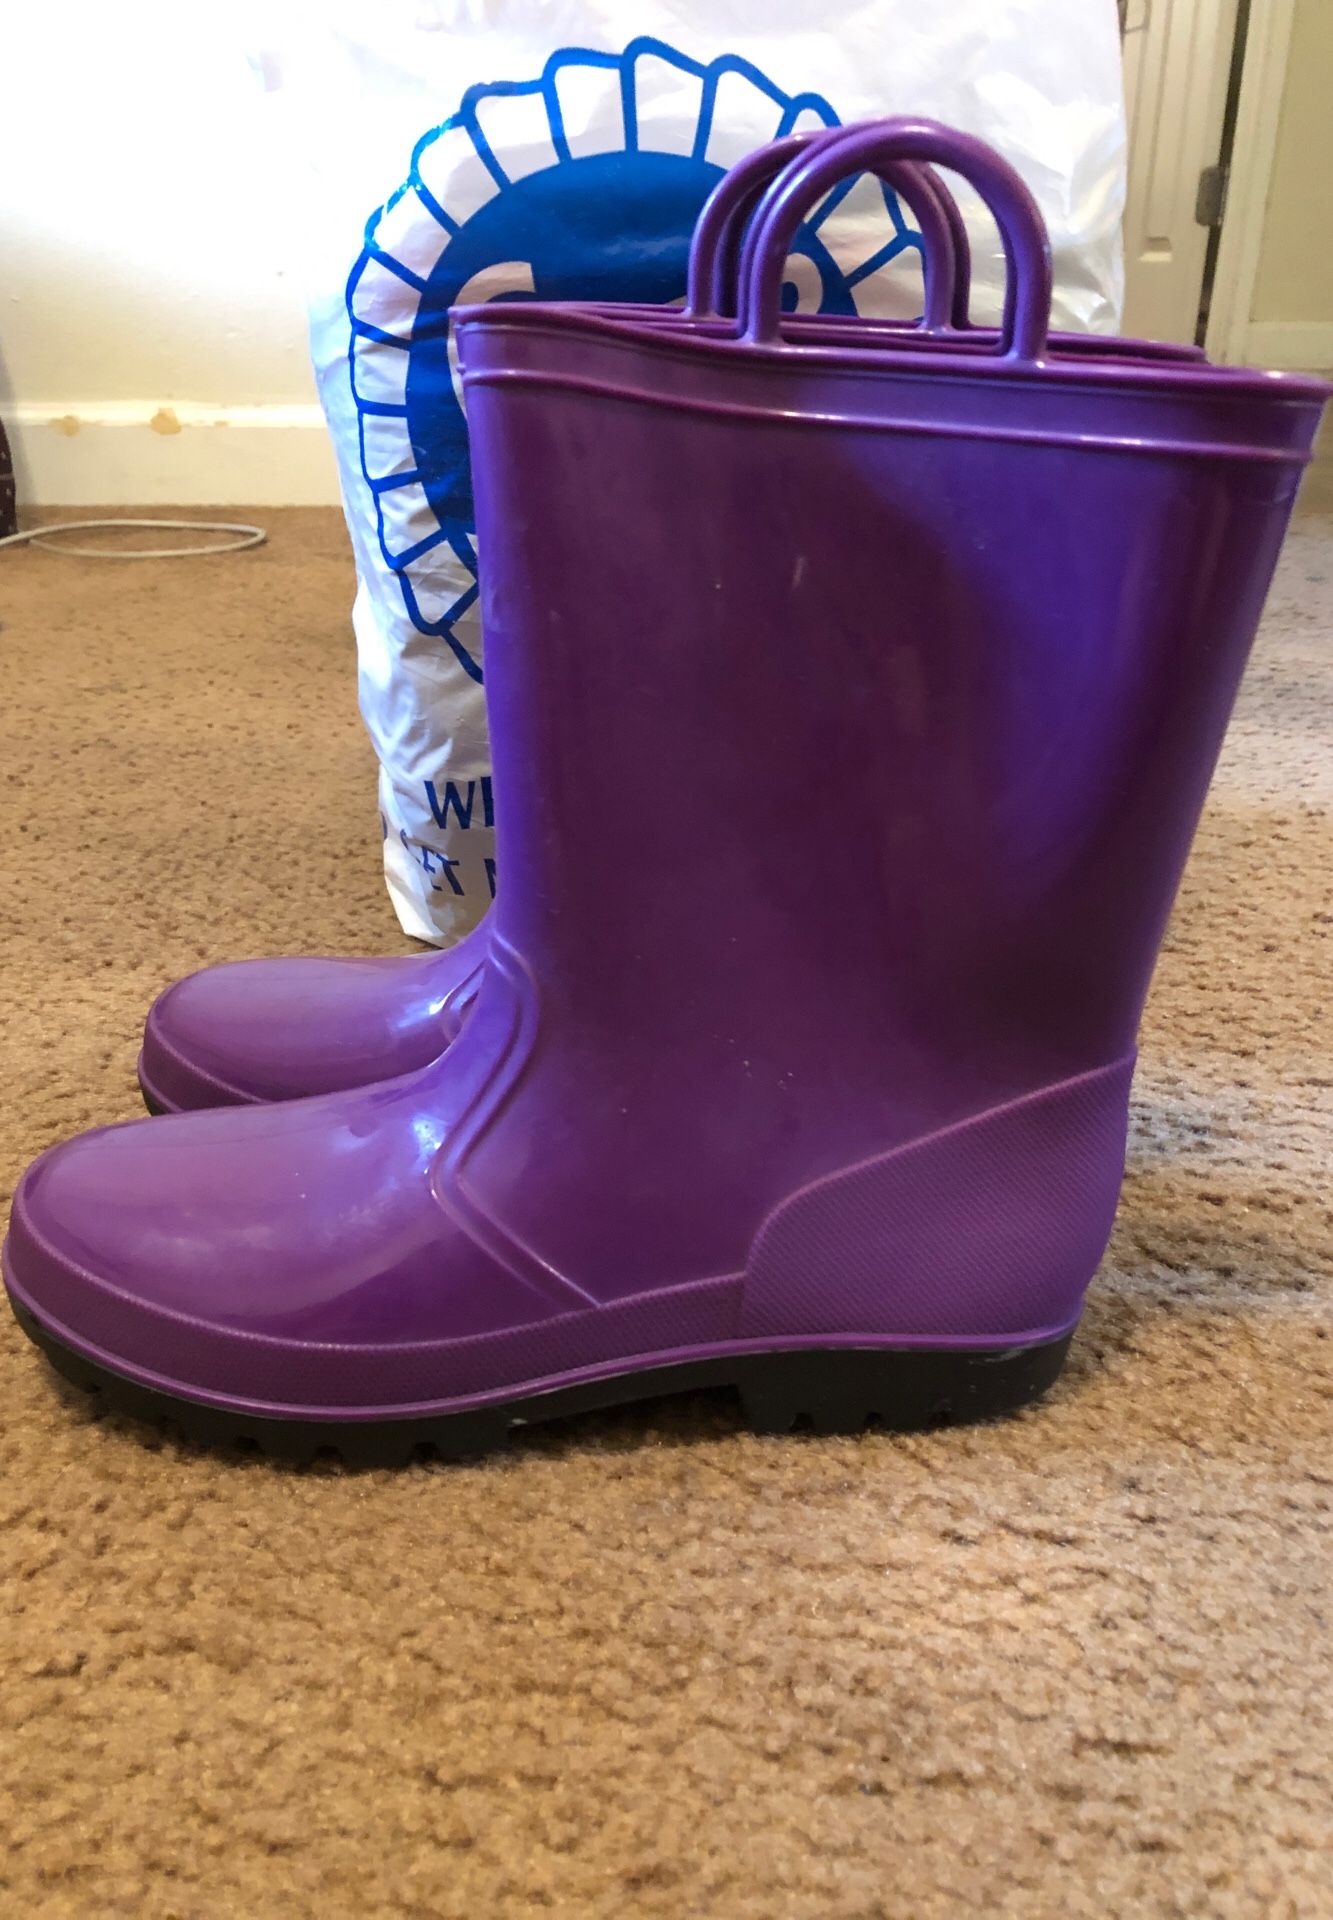 Girls size 4 rain boots